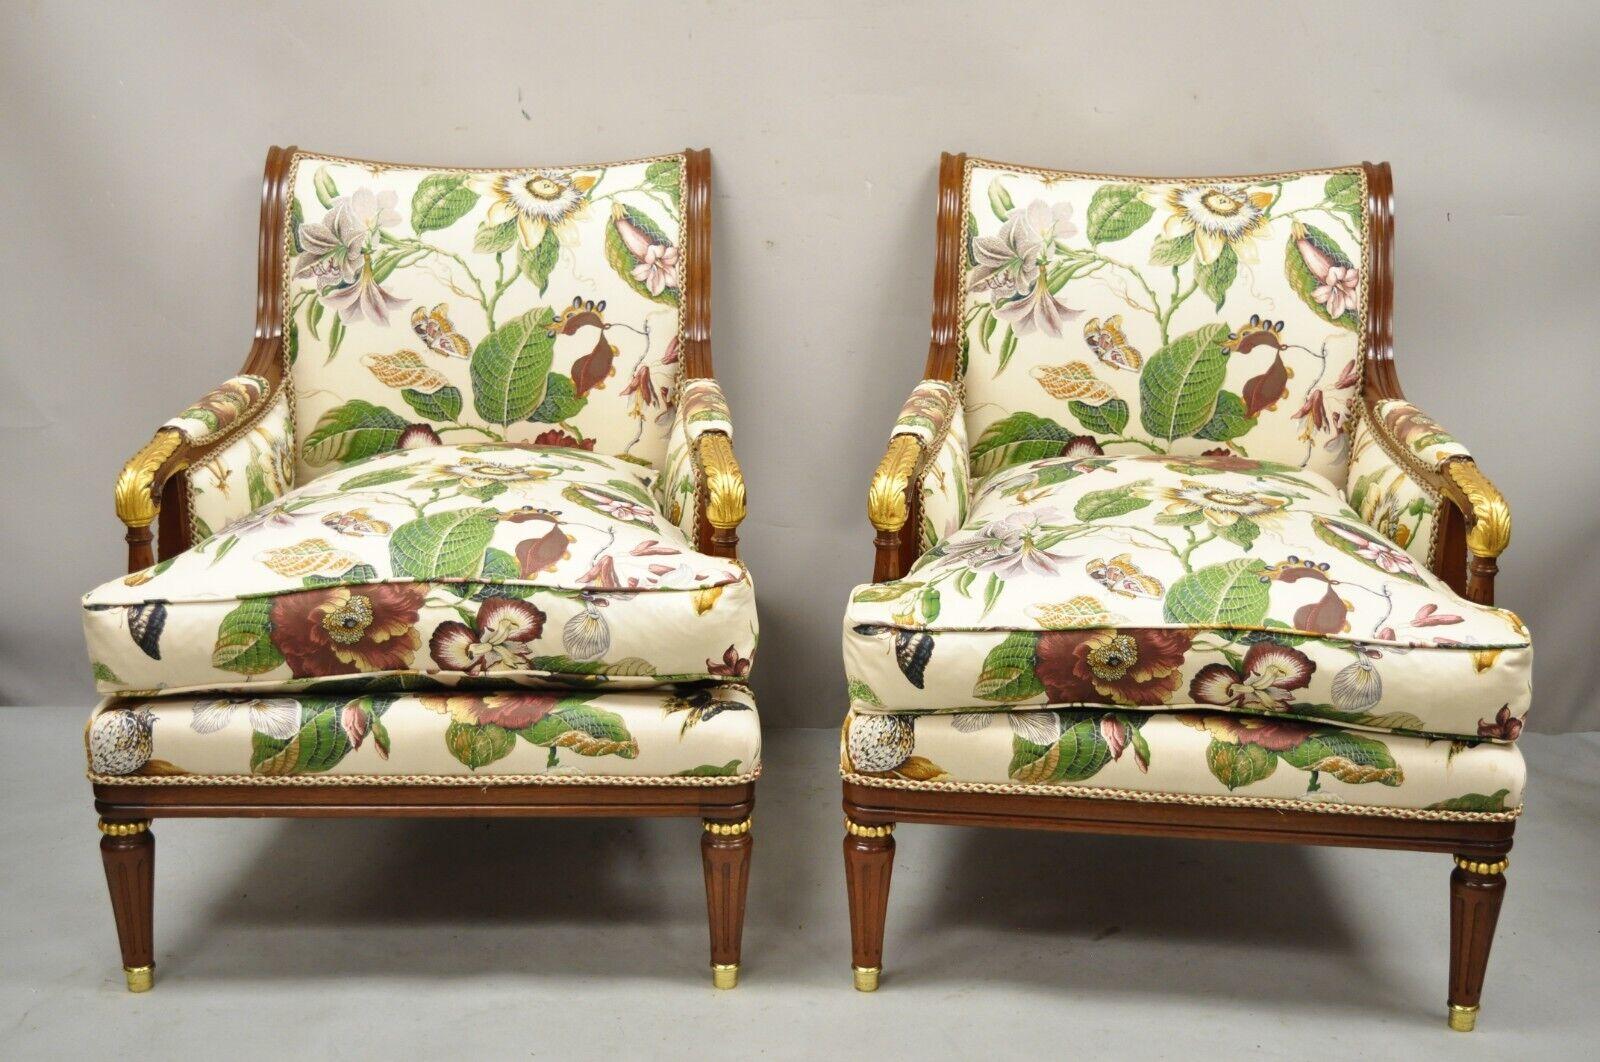 French Regency Style Floral Print Mahagoni Frame Club Lounge Chairs - ein Paar. Item Features teilweise Daunen gefüllte Kissen, Messing gekappt Füße, Goldglanz Akzente, Blumendruck Polsterung mit Schmetterlingen, Massivholzrahmen, schön geschnitzten